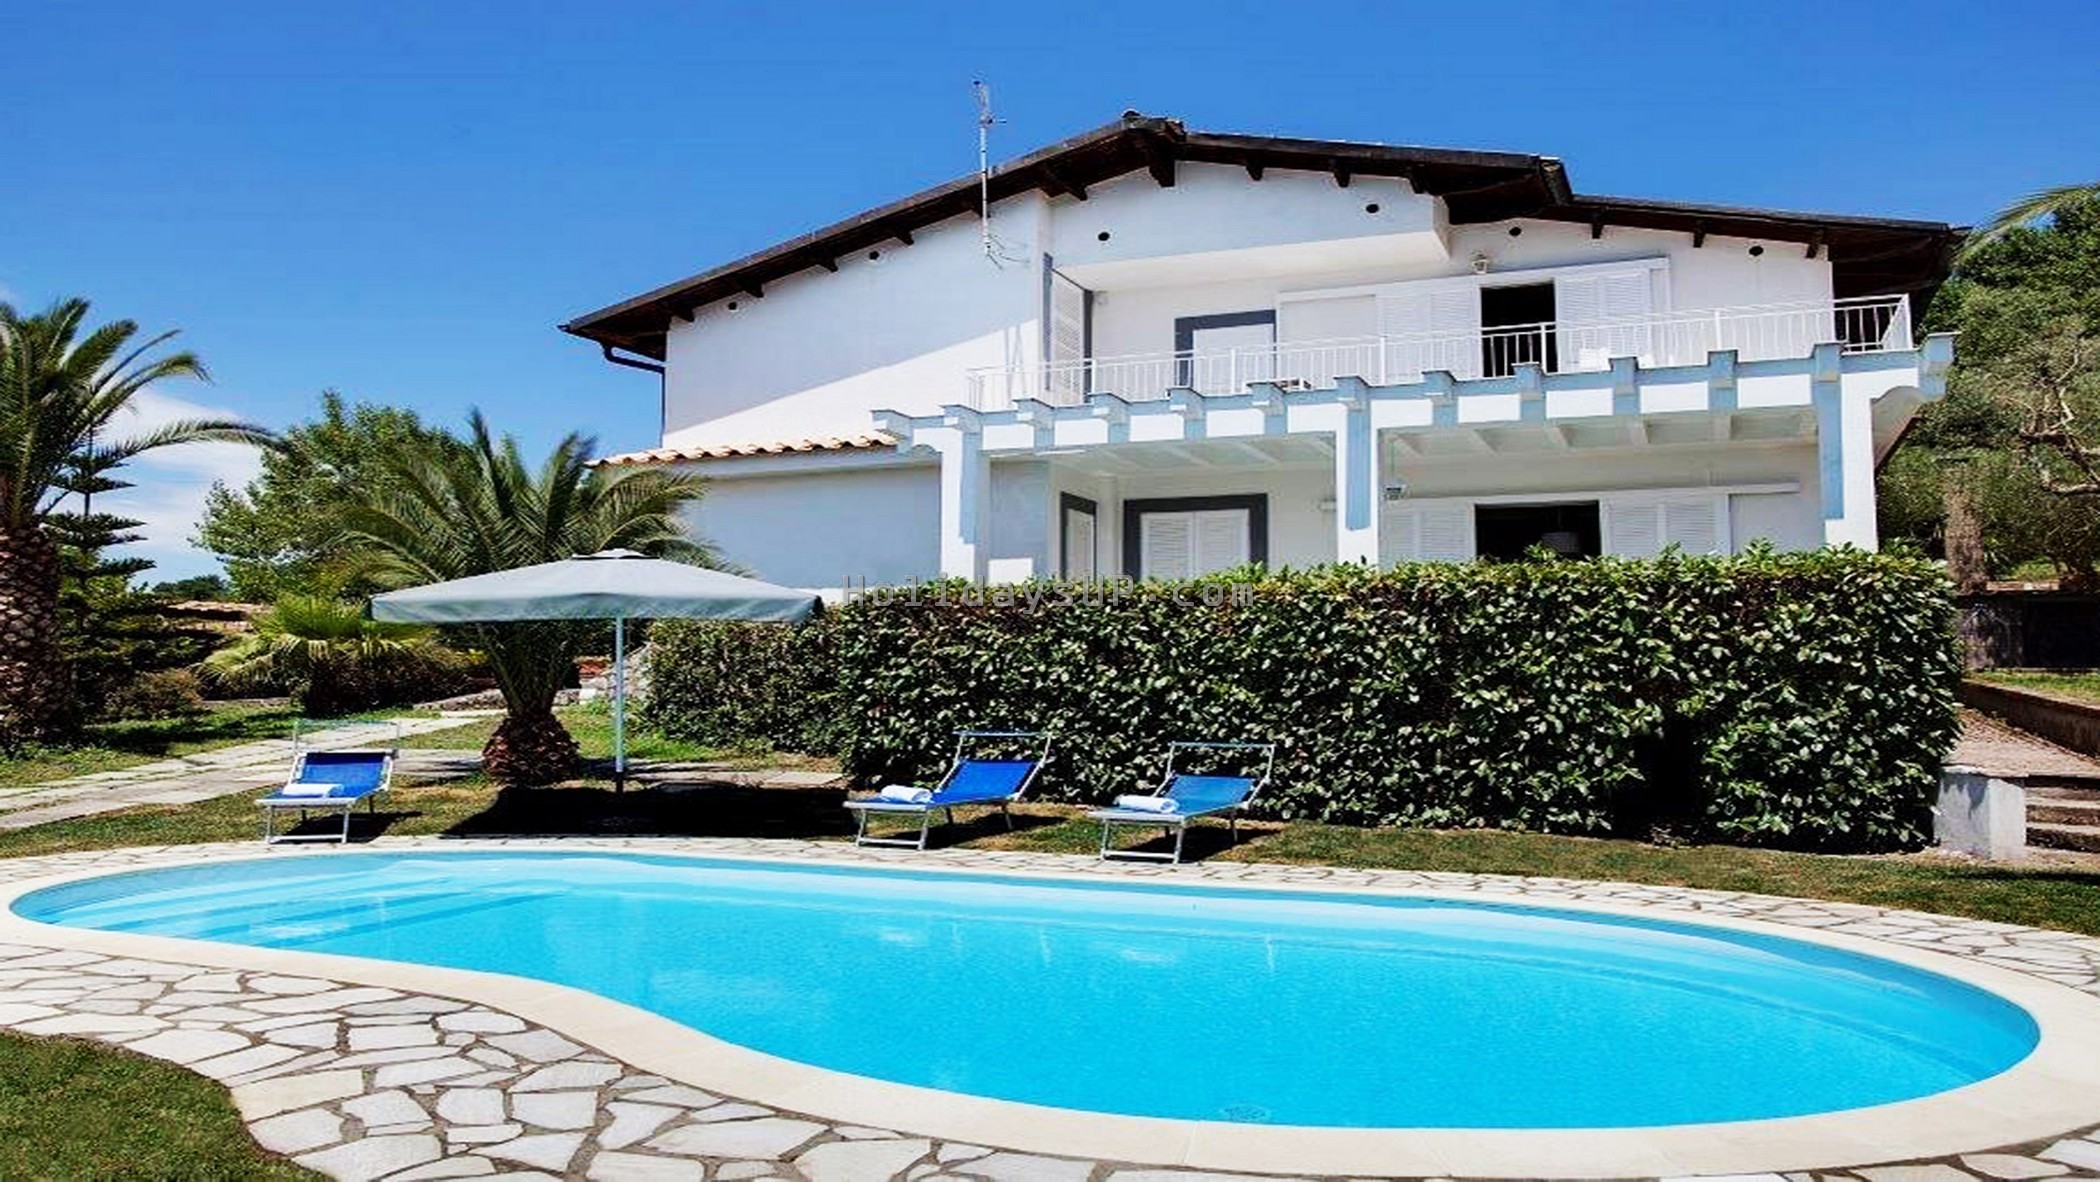 Villa Aldo with private pool in Sorrento Coast